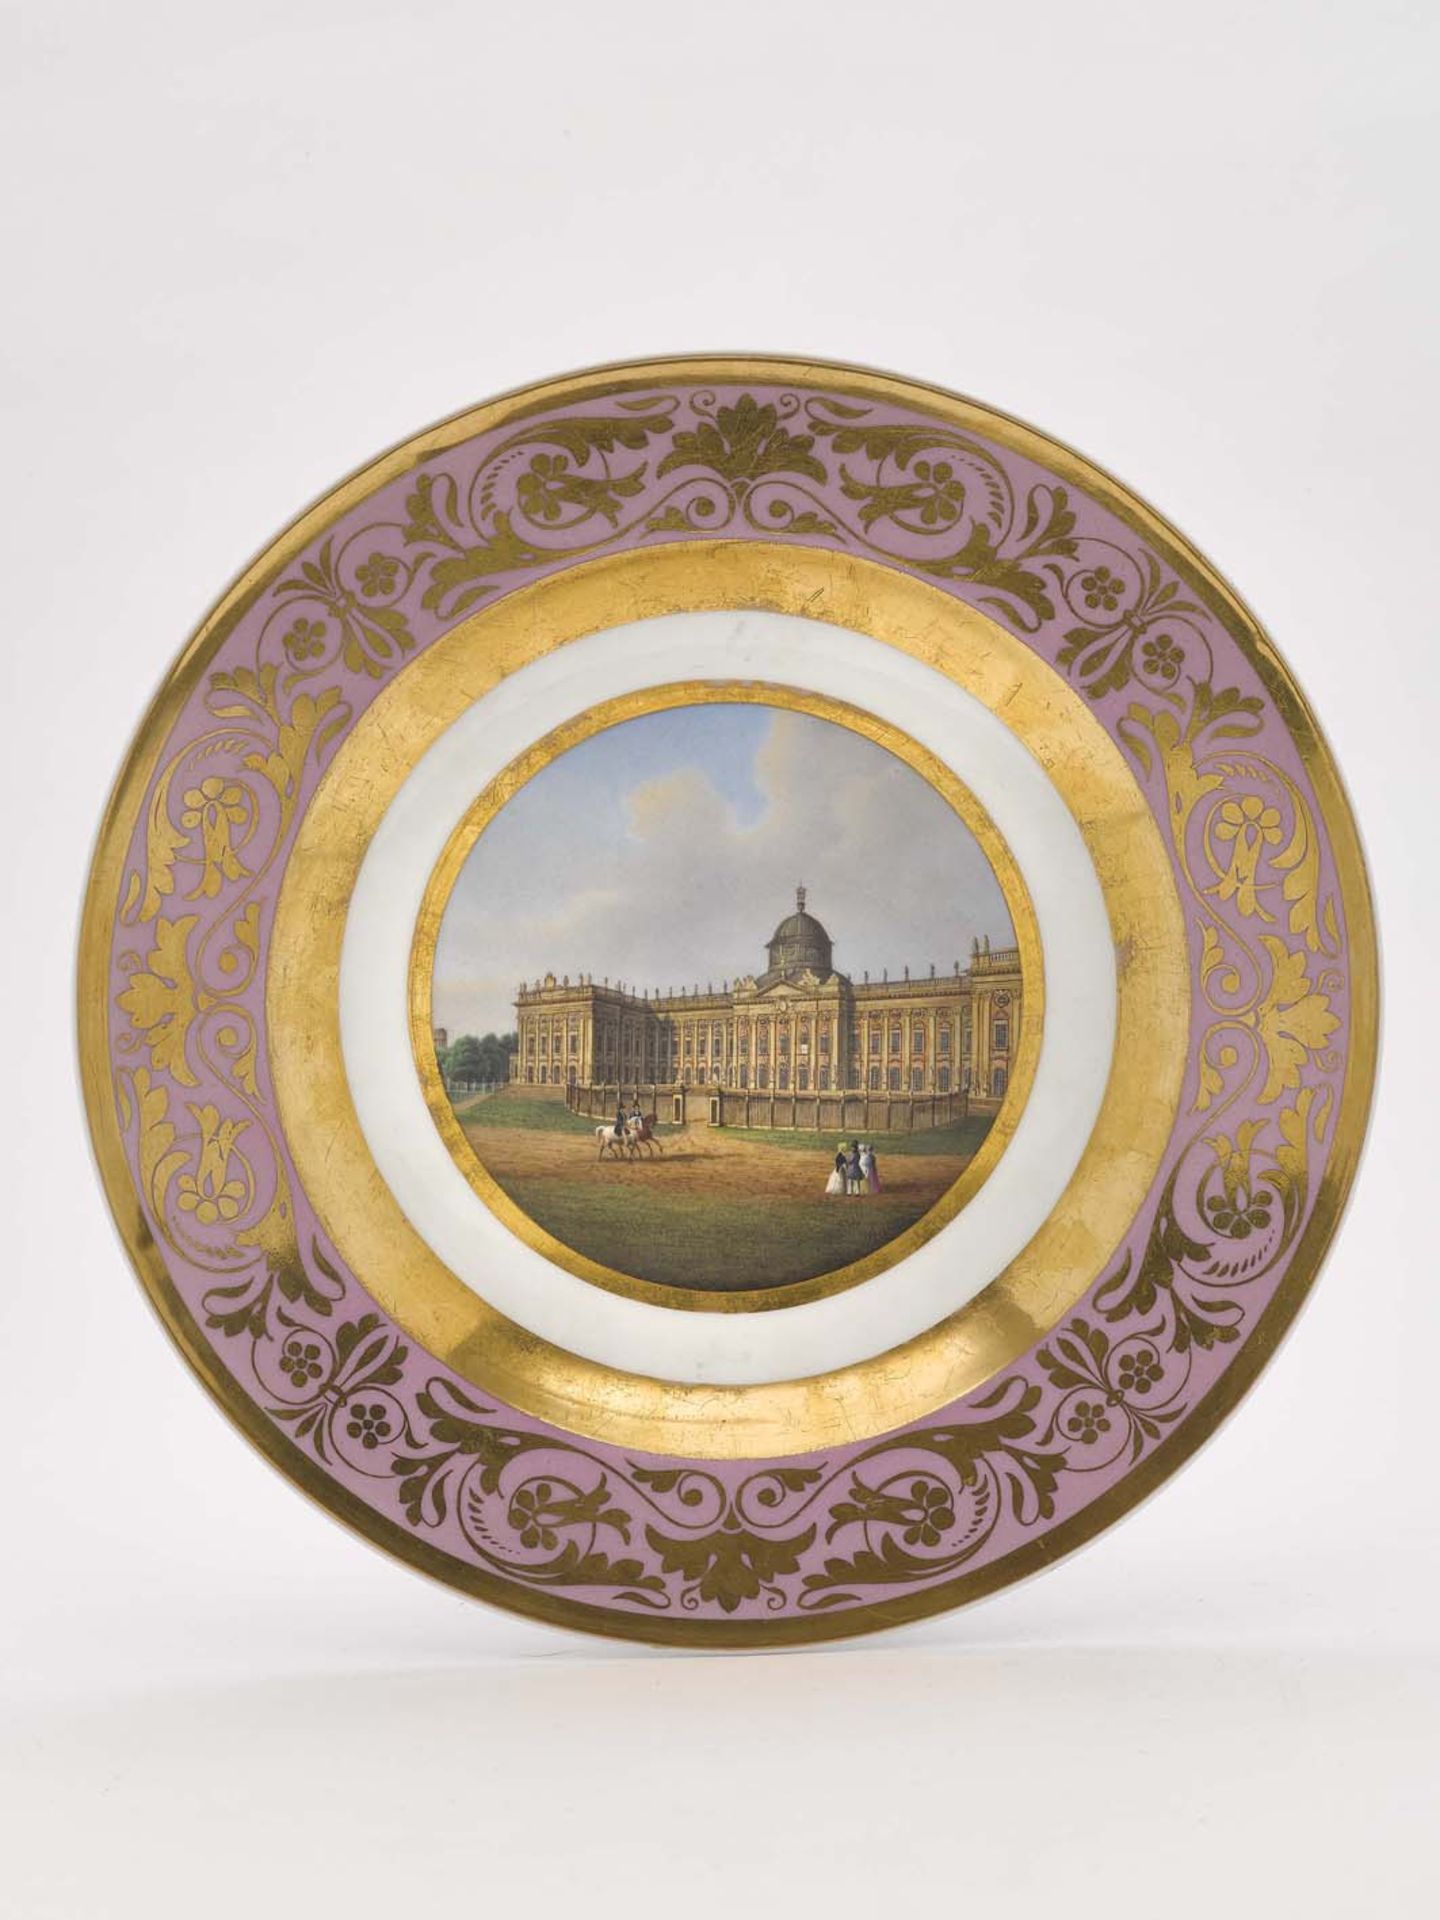 Ansichtenteller "Das neue Palais bei Potsdam"KPM Berlin, um 1842 - 1844 Porzellan. Goldstaffage. Auf